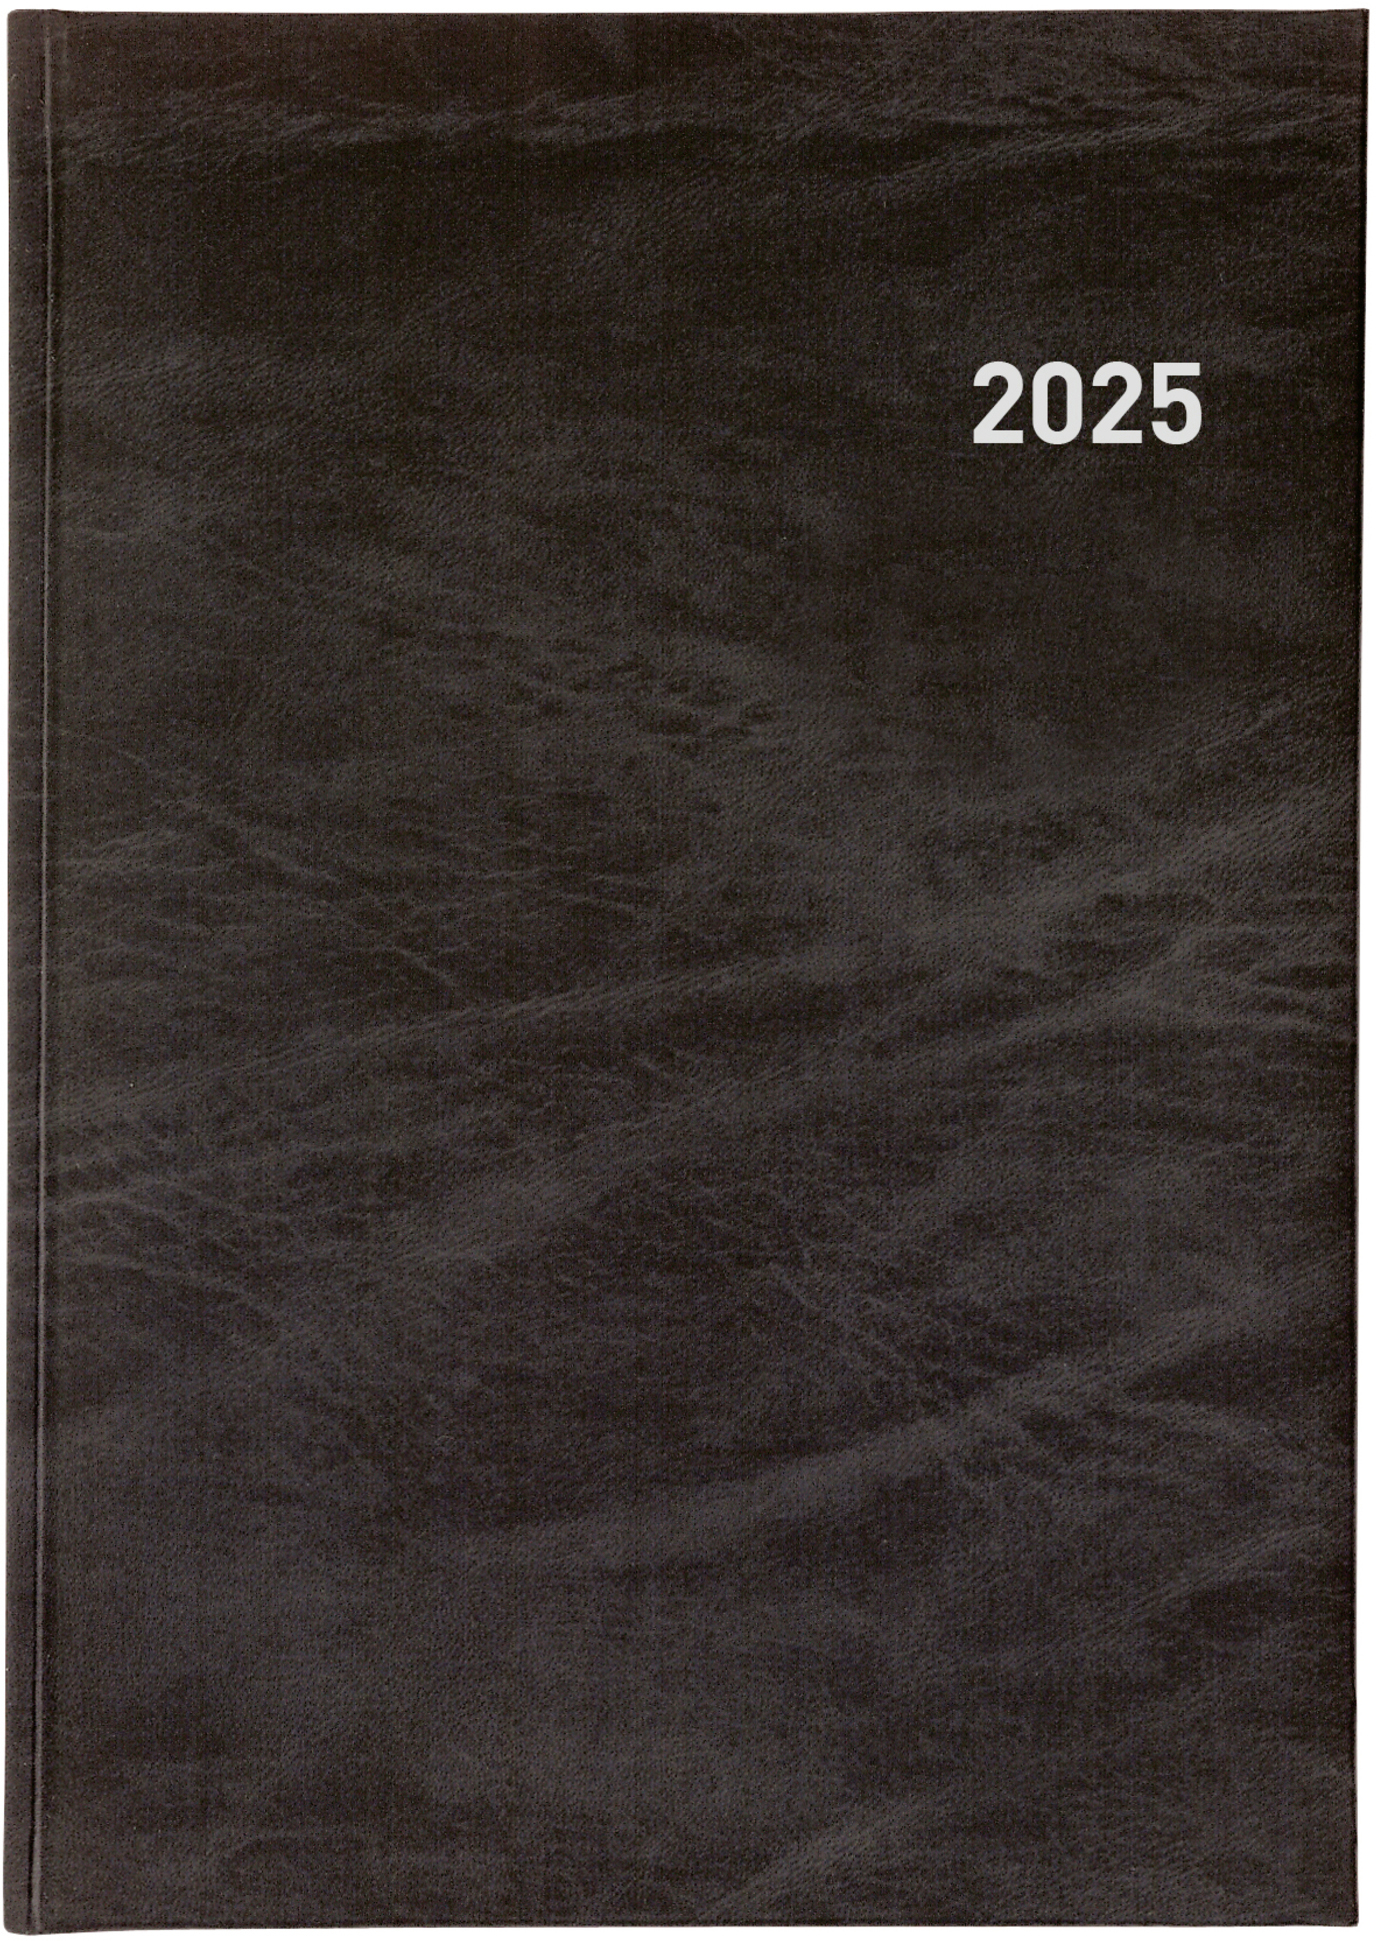 BIELLA Agenda Registra 7 plus 2025 809370020025 1S/2P noir ML 17.2x24cm